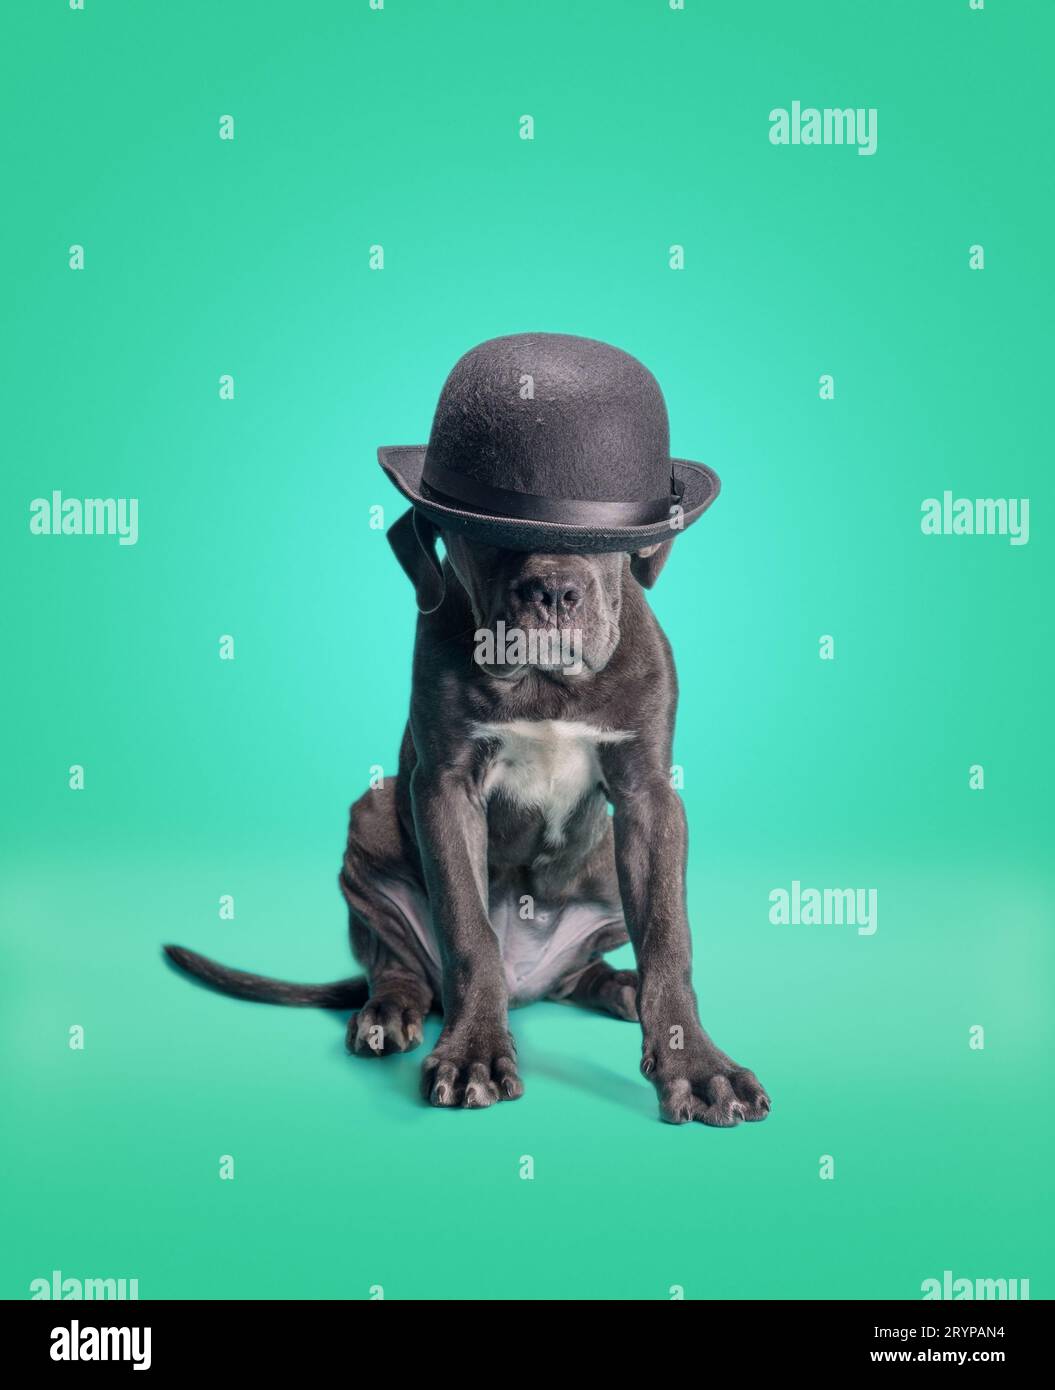 Cucciolo di cane corso Italiano in cappello nero su sfondo verde Foto Stock